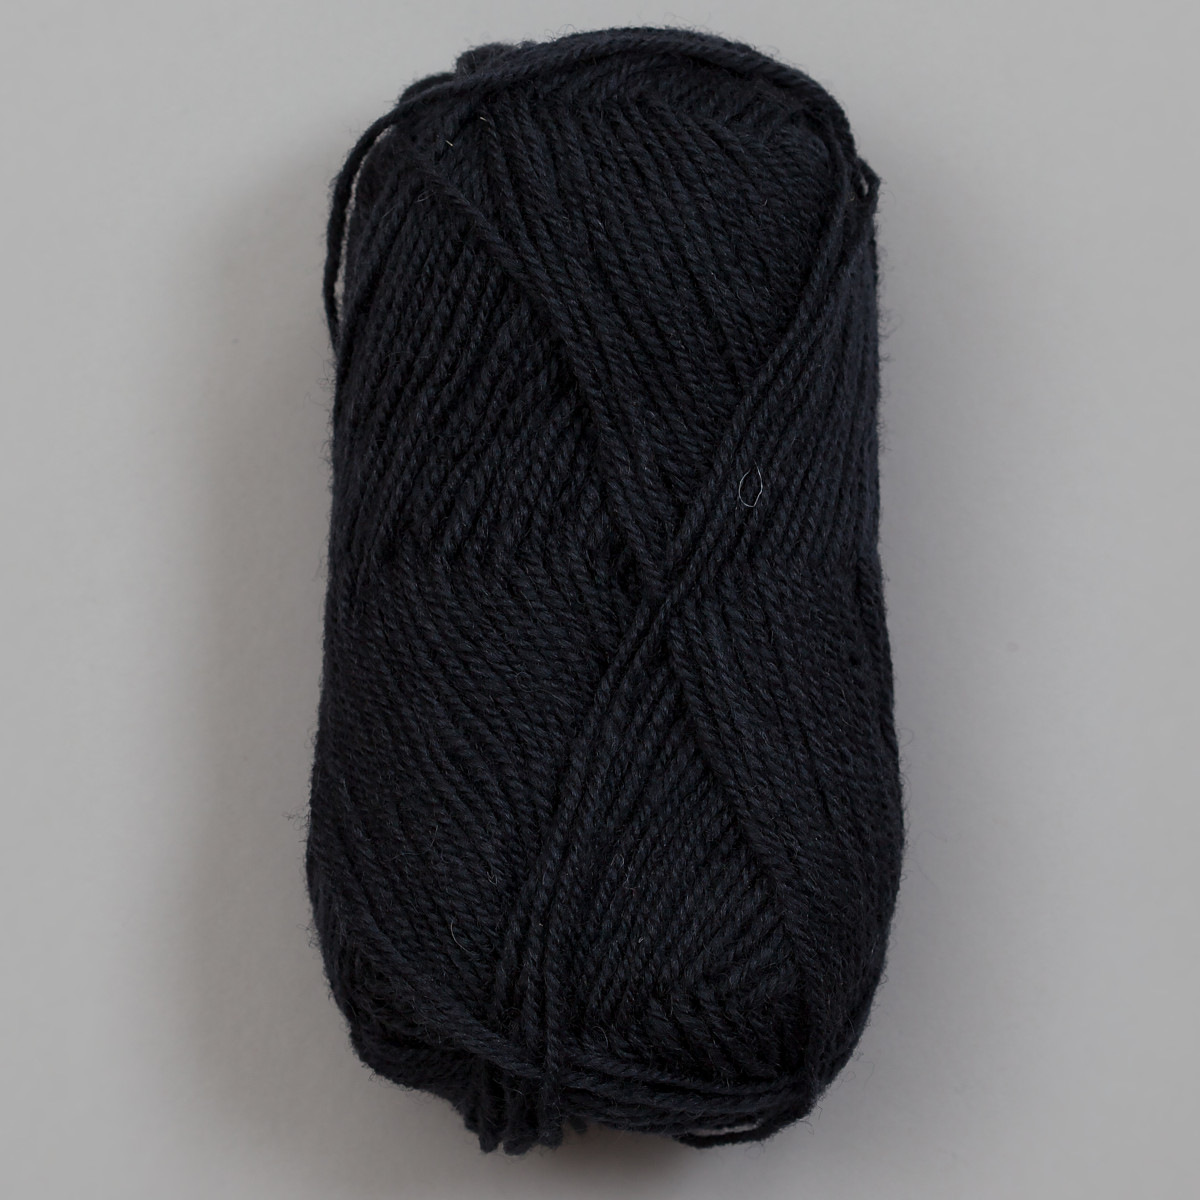 3-tråds strikkegarn - Mørk blågrå (1387)